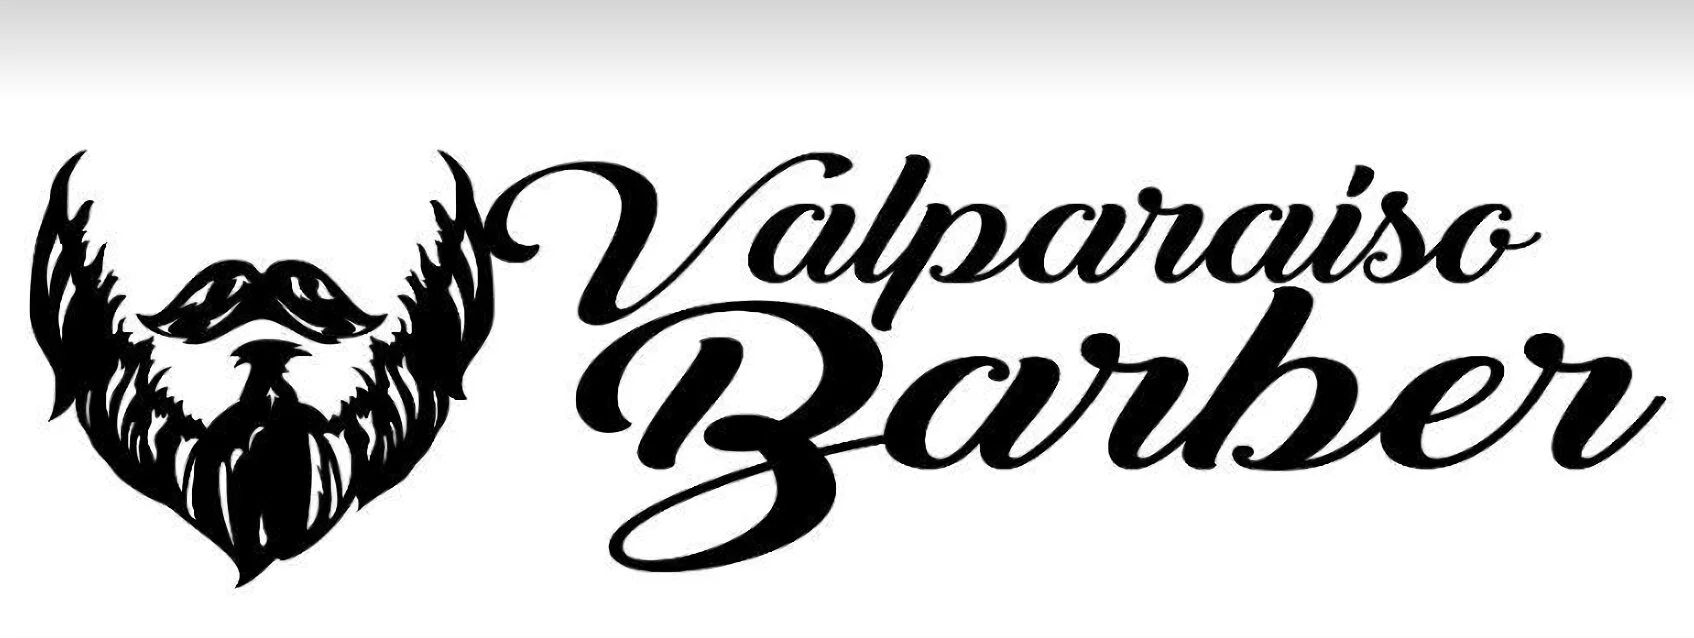 Barbería-valparaiso-barber-11652